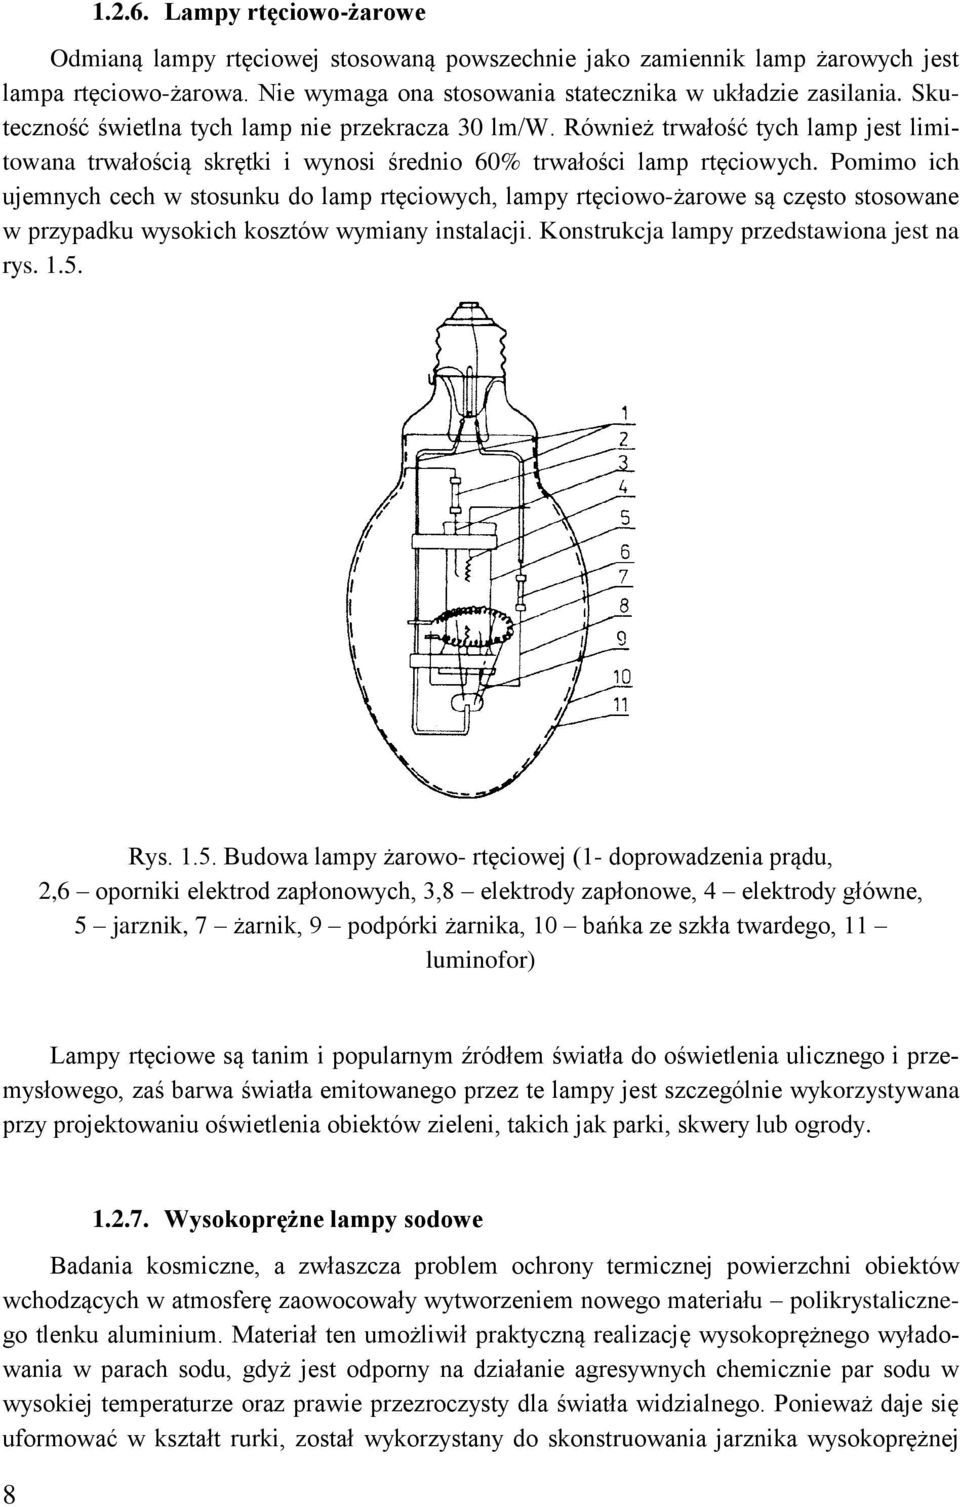 Pomimo ich ujemnych cech w stosunku do lamp rtęciowych, lampy rtęciowo-żarowe są często stosowane w przypadku wysokich kosztów wymiany instalacji. Konstrukcja lampy przedstawiona jest na rys. 1.5.